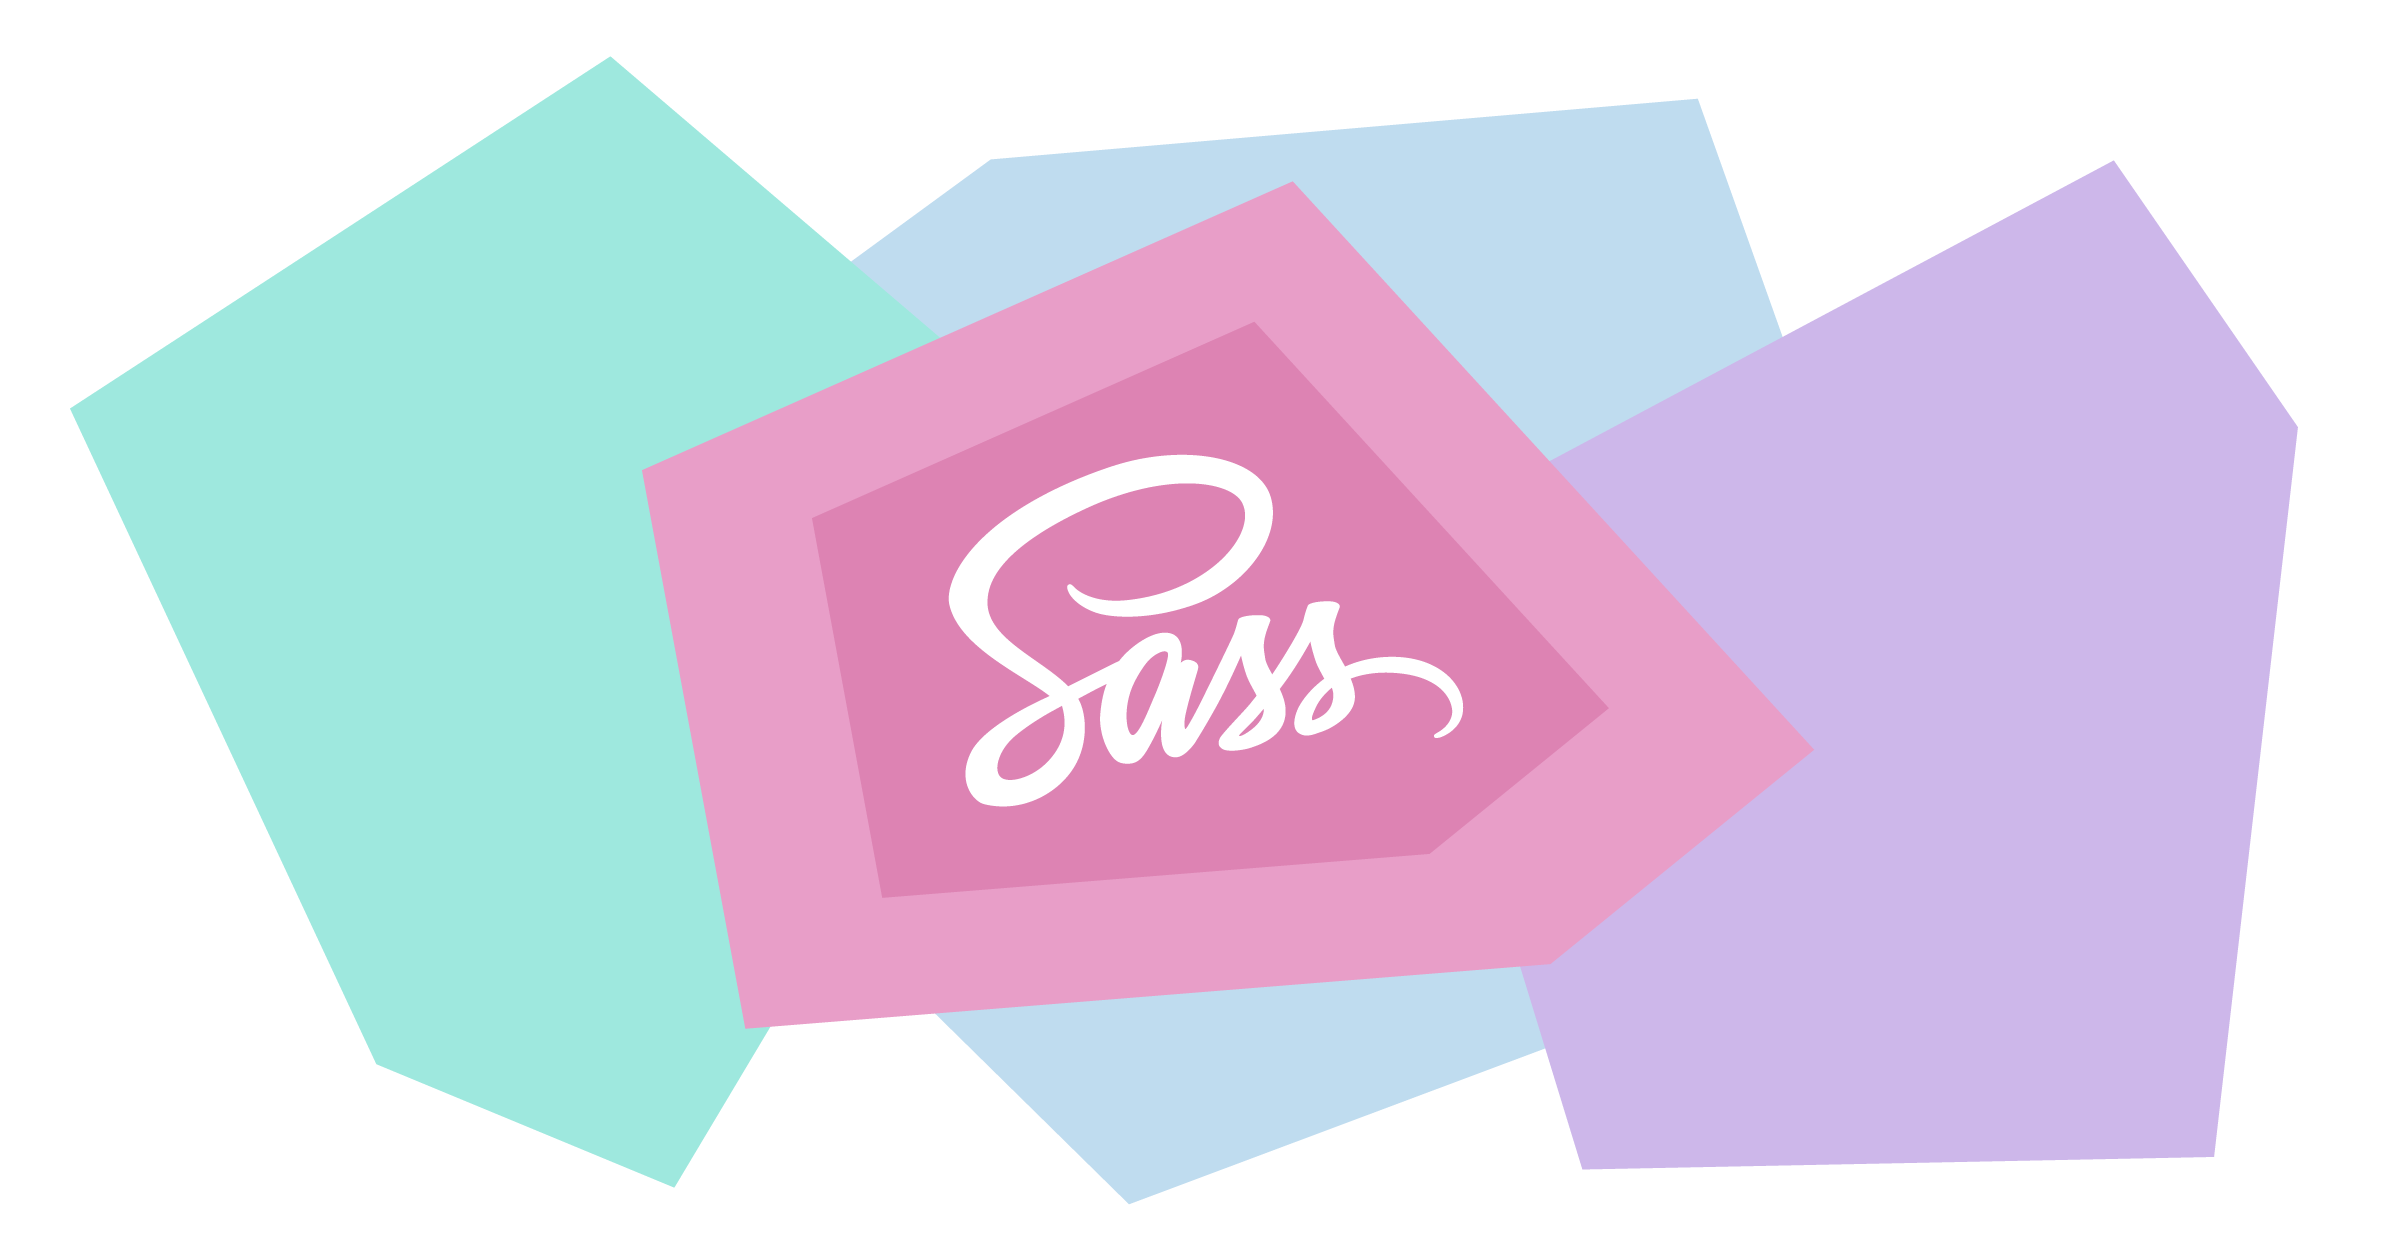 Sass 출력 스타일 — 4가지 CSS 양식 중 마음에 드는 것을 선택하세요